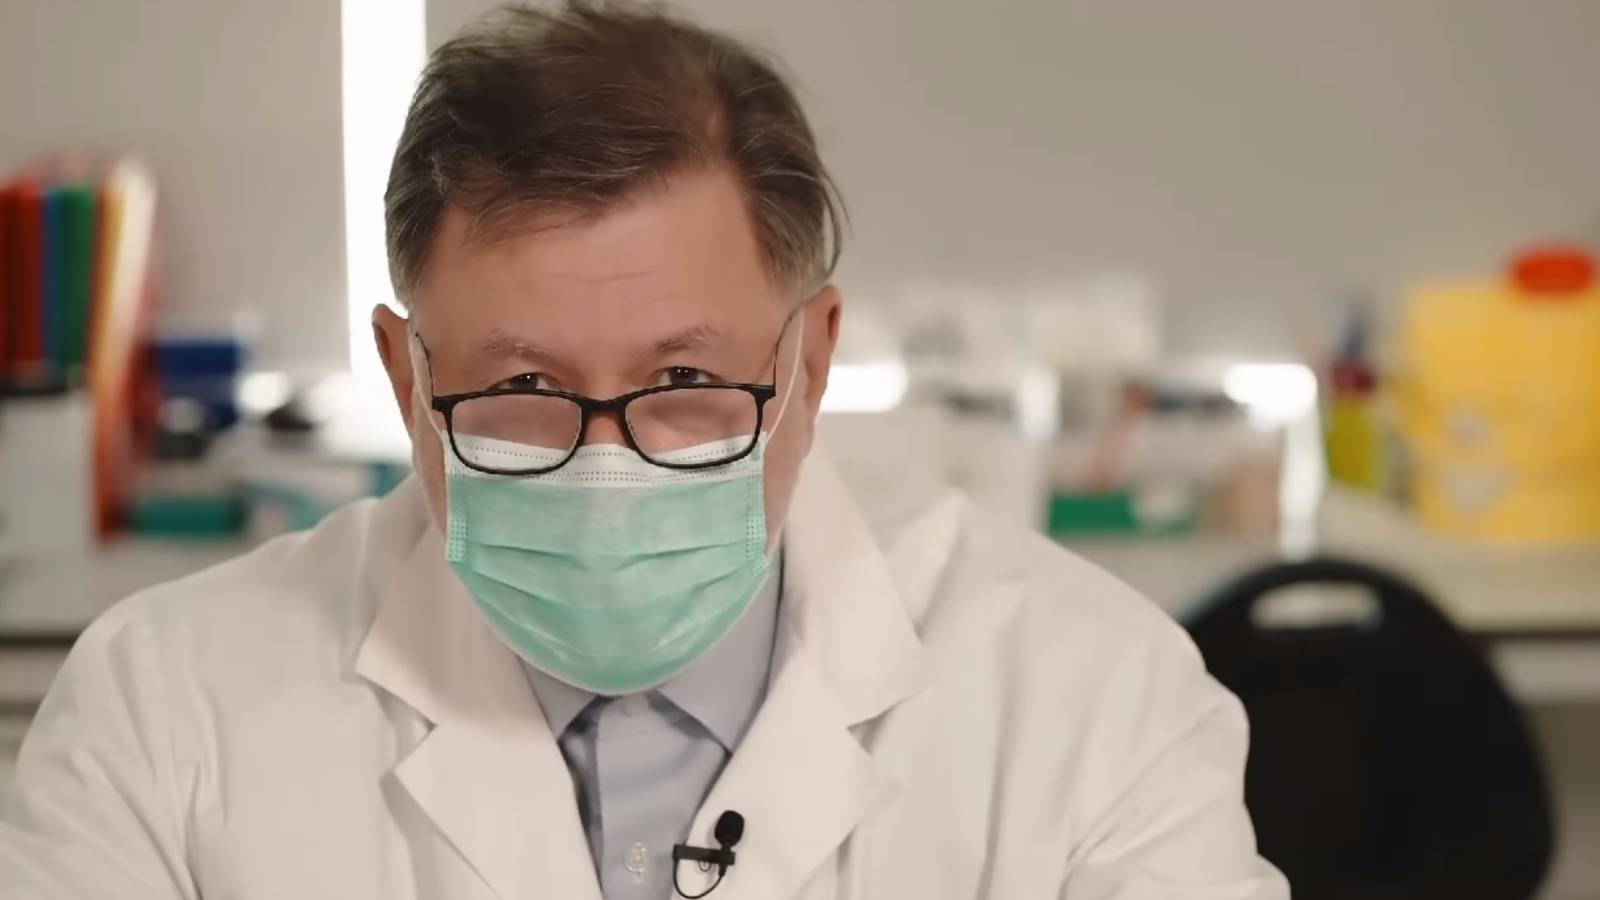 VIDEO Come vengono utilizzati i test sulla saliva per rilevare il COVID